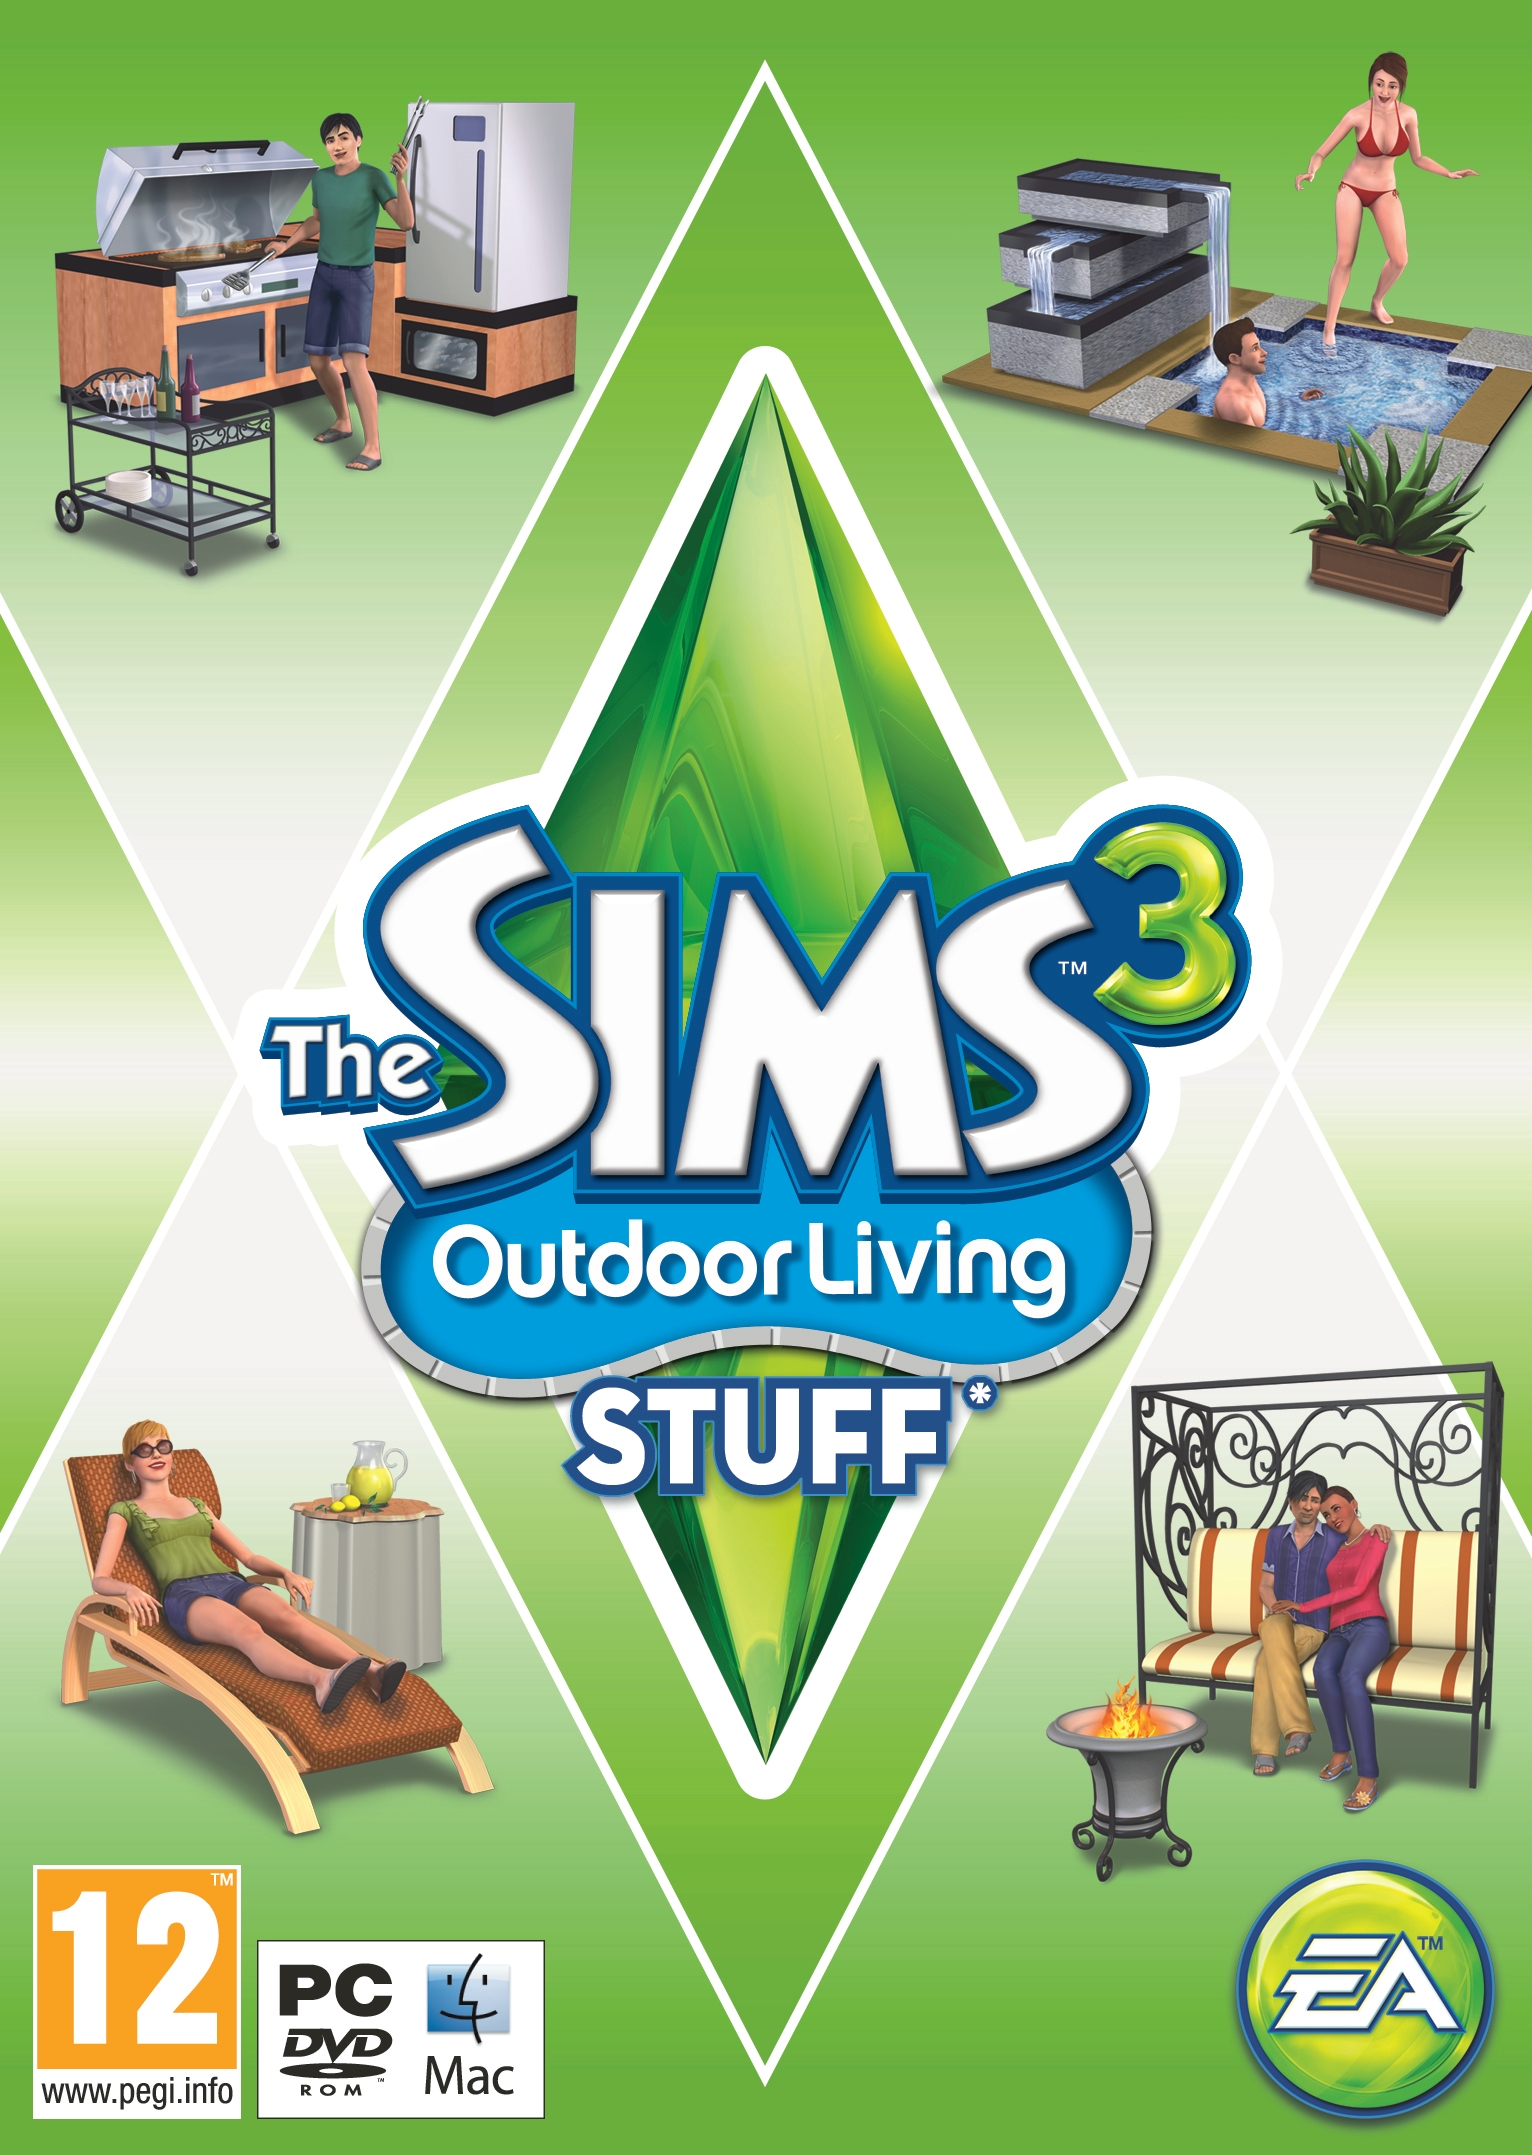 Sims 3 Mac Torrent Download